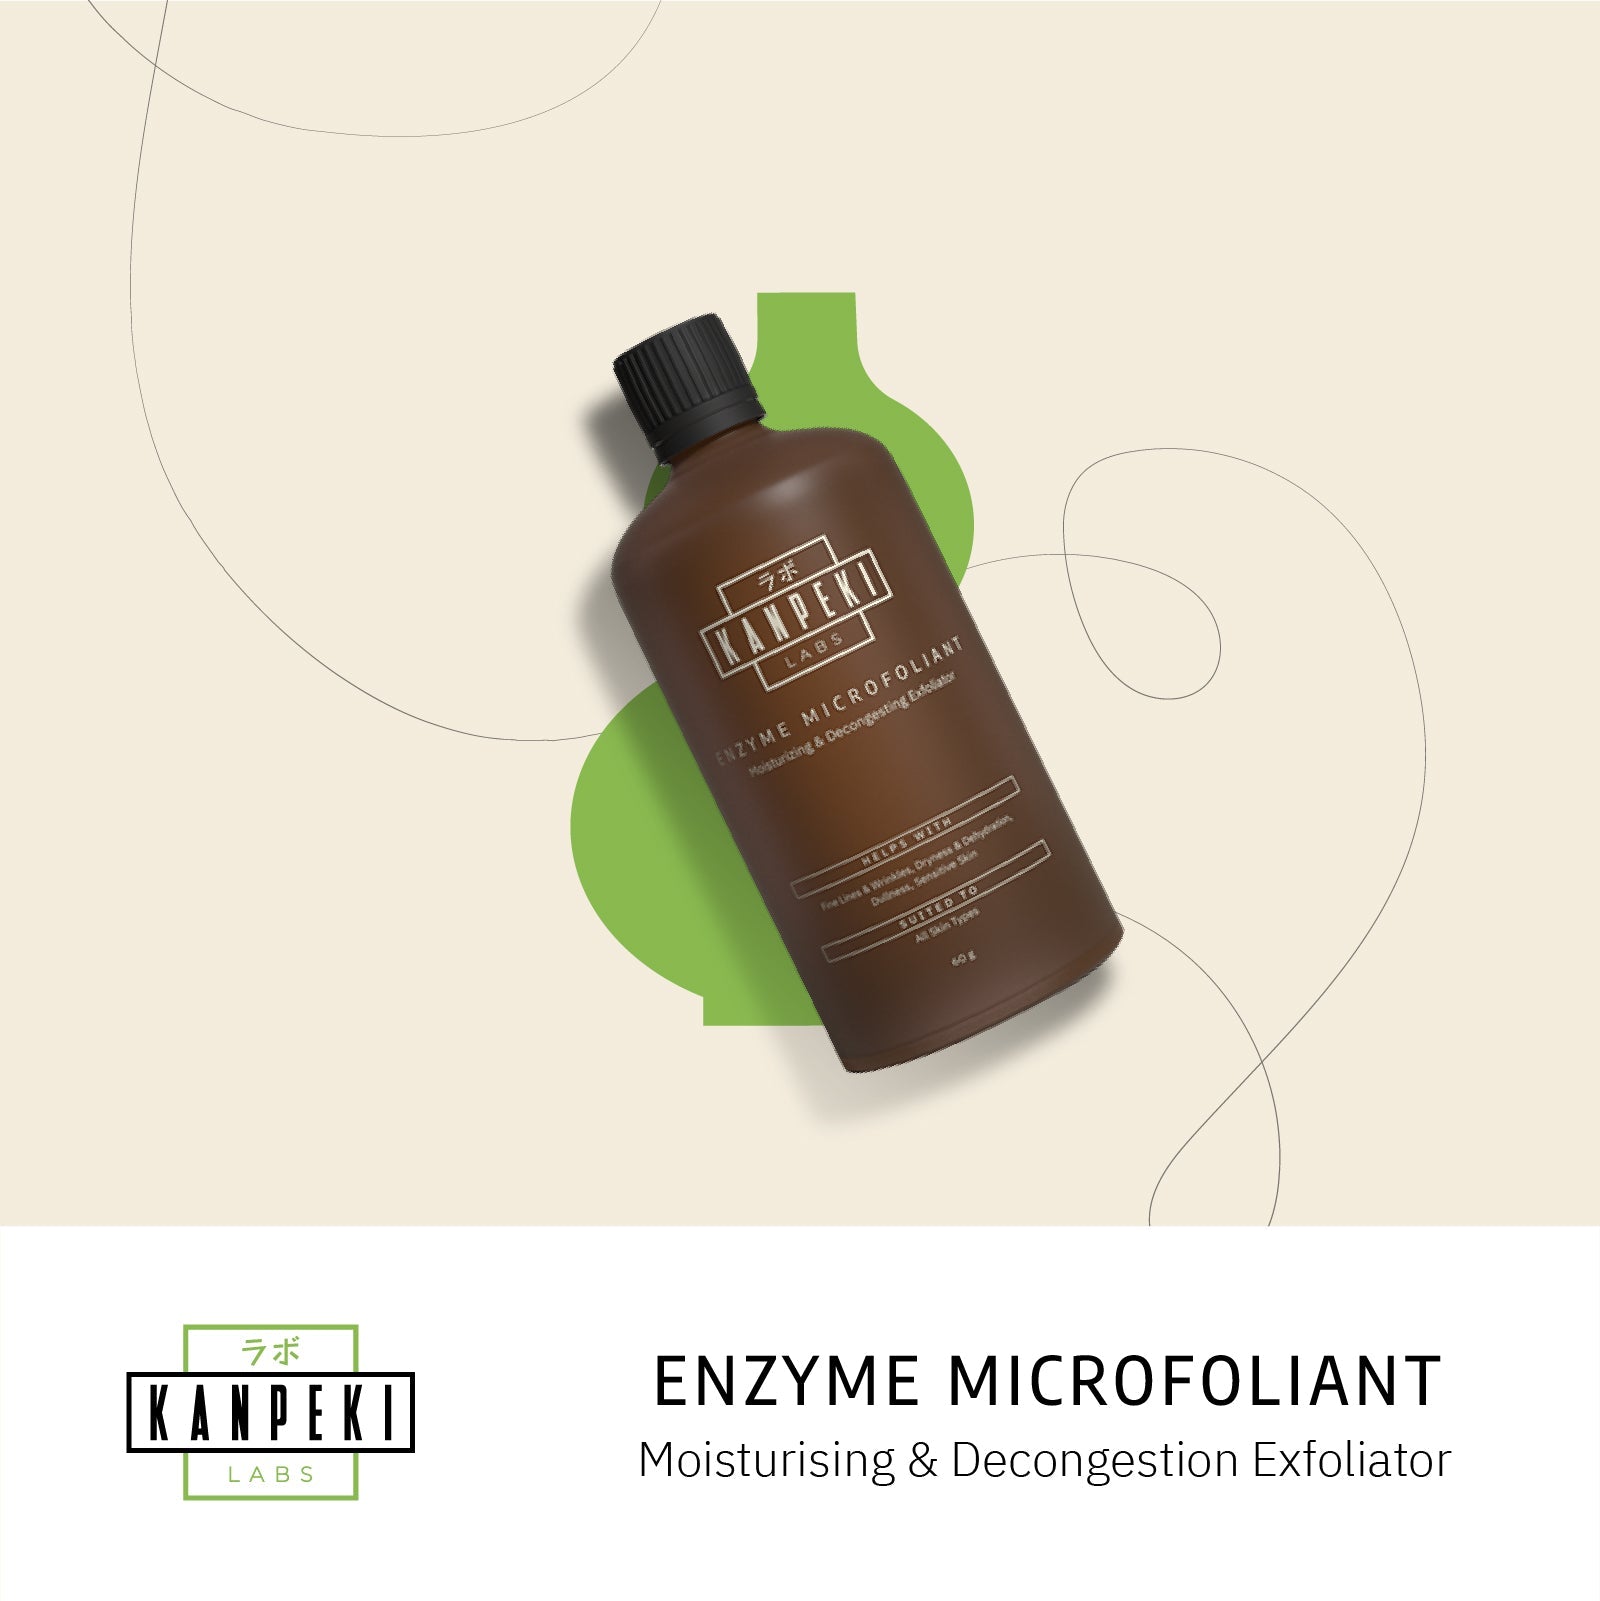 Enzyme Microfoliant-Moisturizing & Decongesting Exfoliator - Kanpeki Skincare